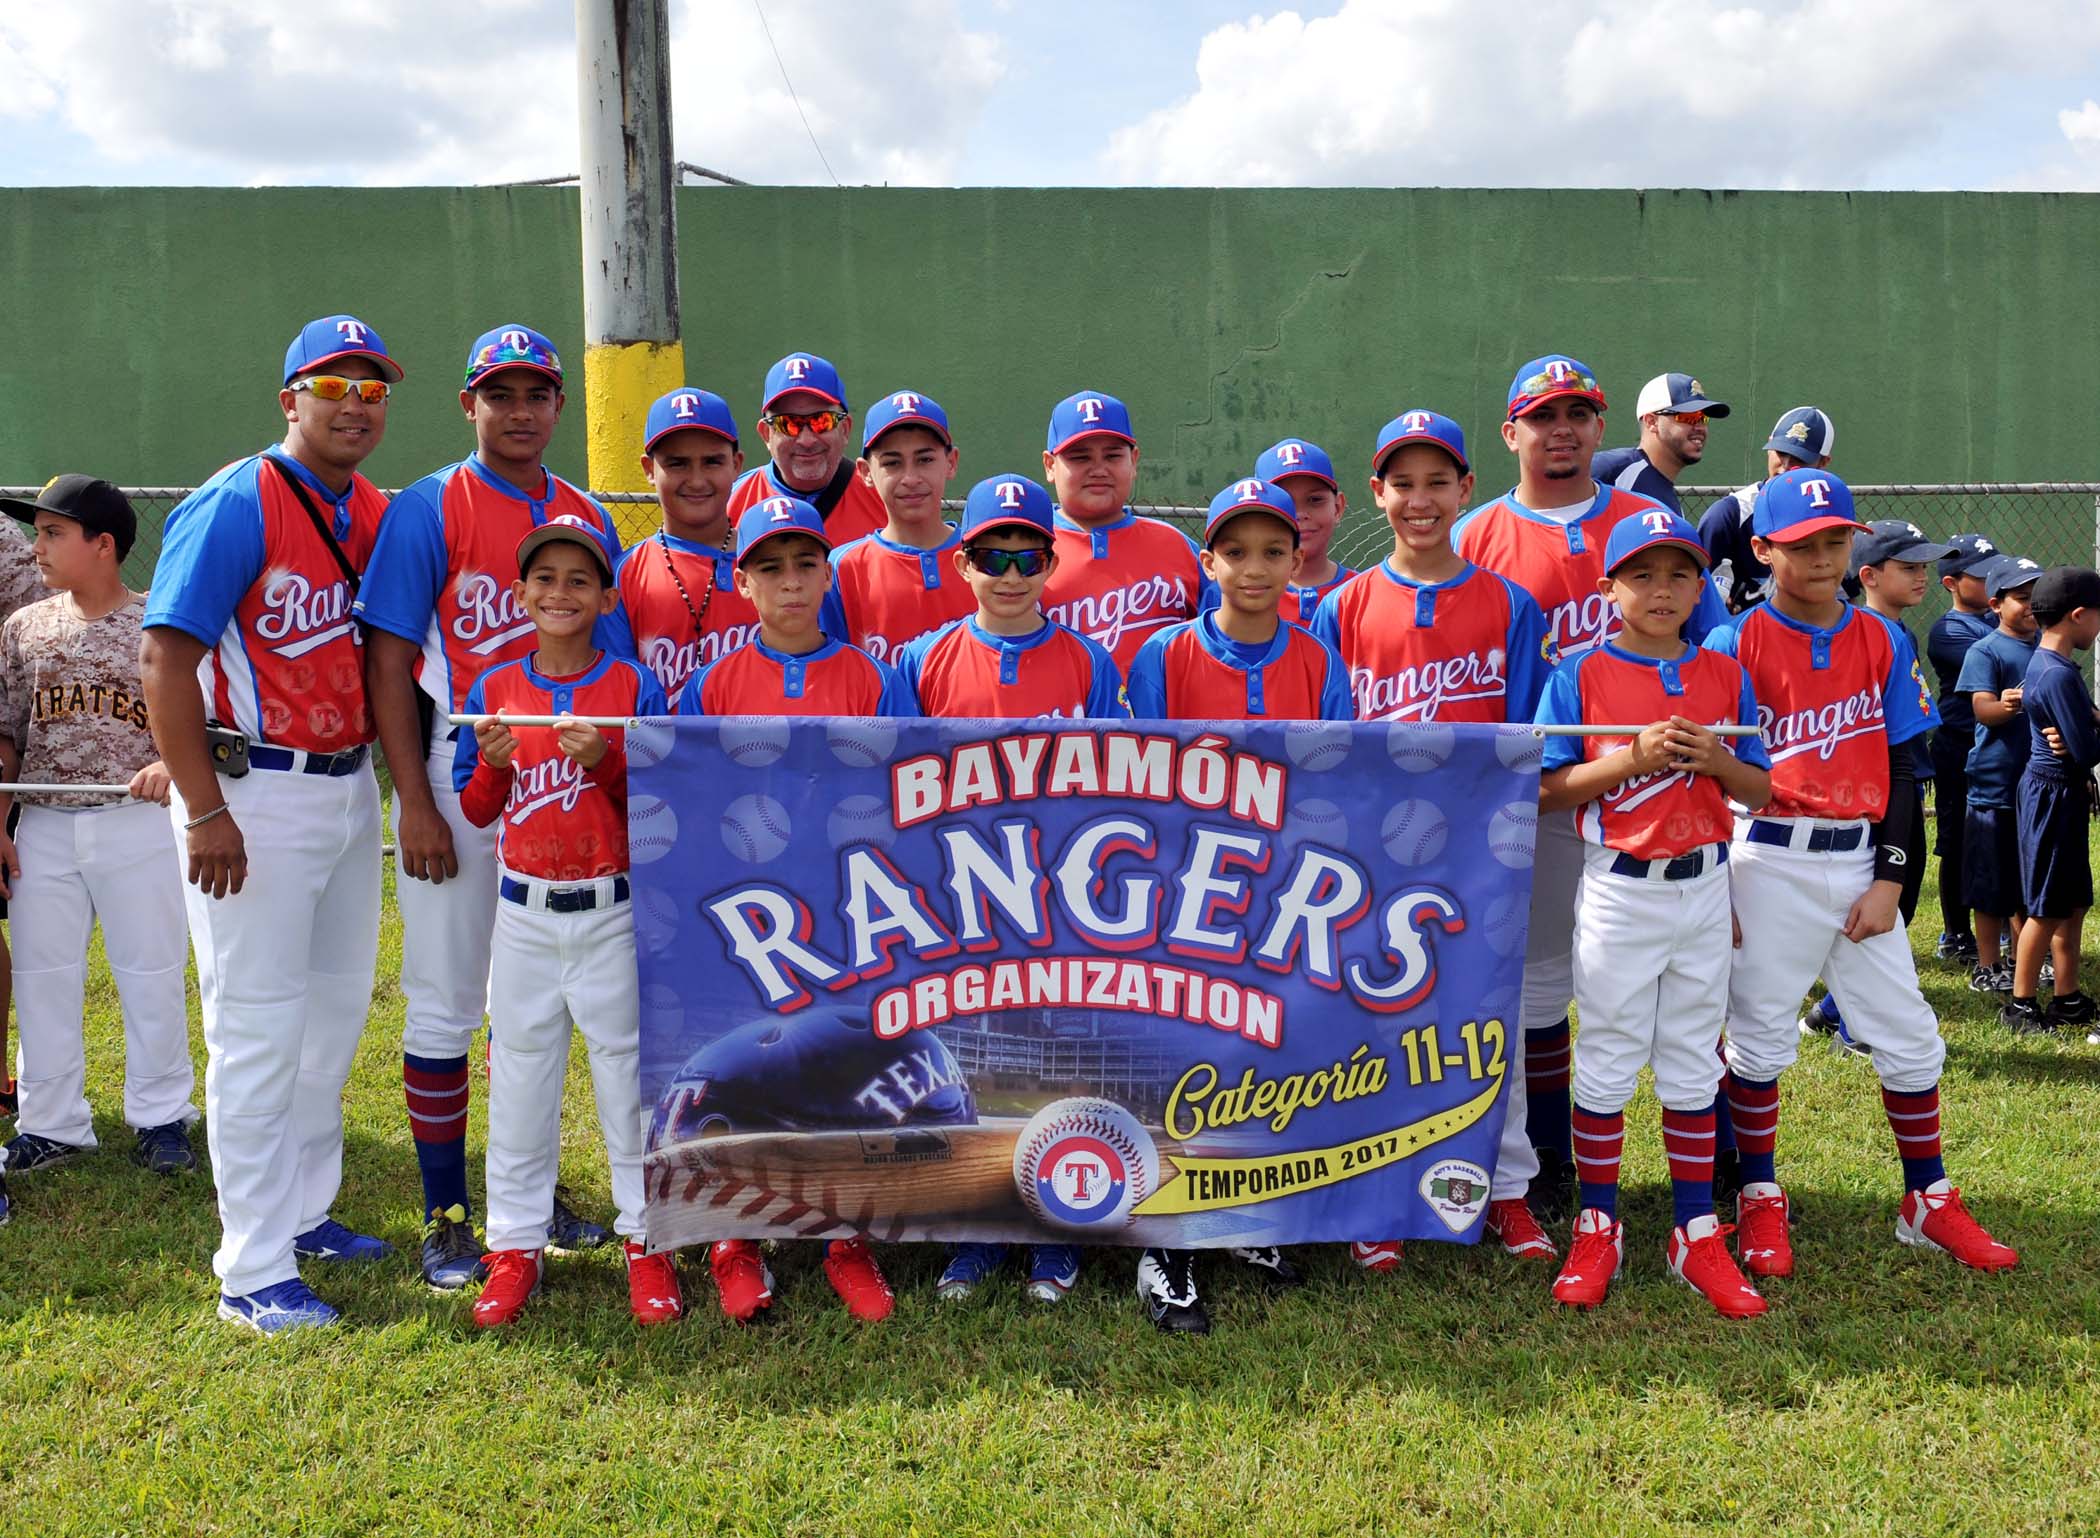 Equipo Bayamón Rangers Organization categoría 11-12